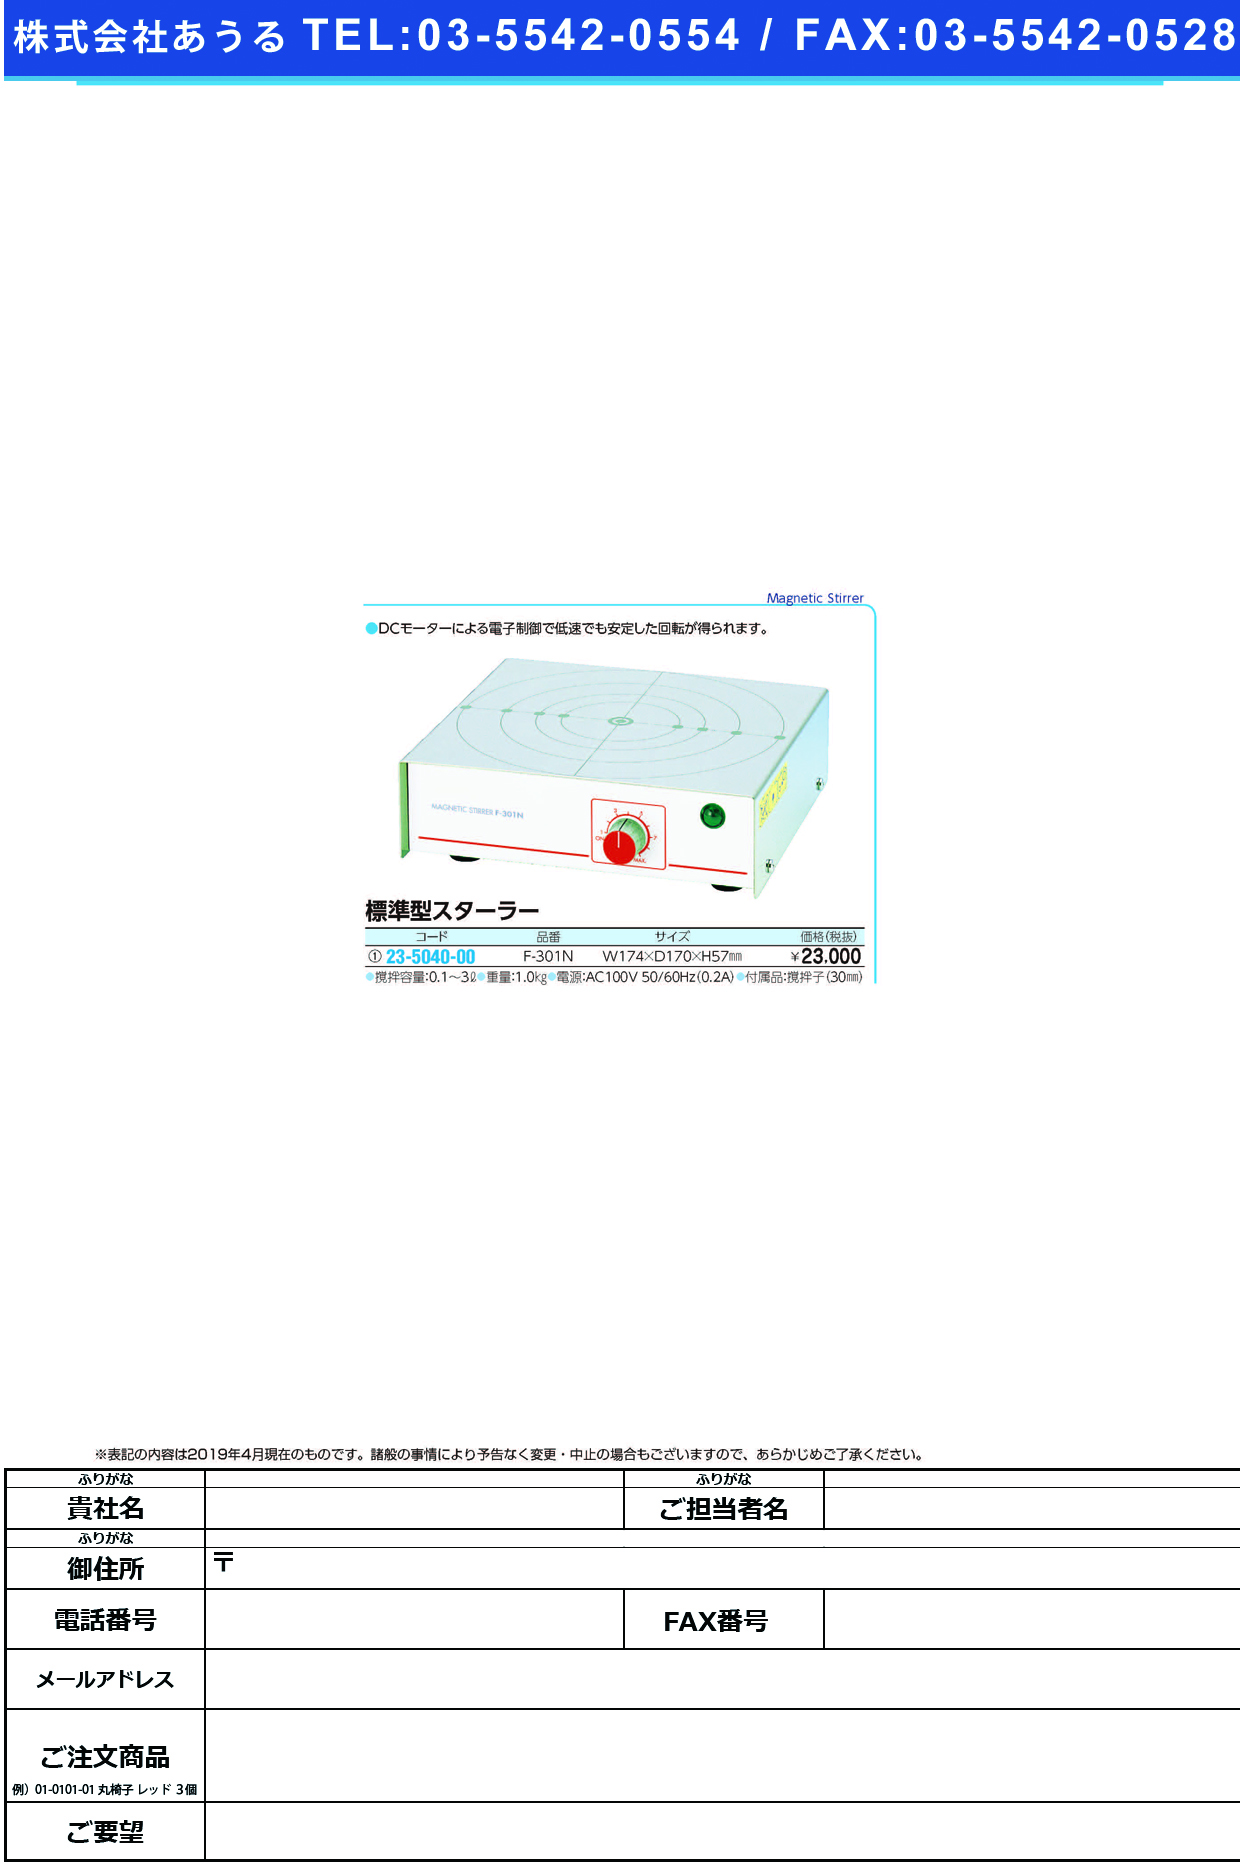 (23-5040-00)標準型スターラー F-301N ﾋｮｳｼﾞｭﾝｶﾞﾀｽﾀｰﾗｰ【1台単位】【2019年カタログ商品】